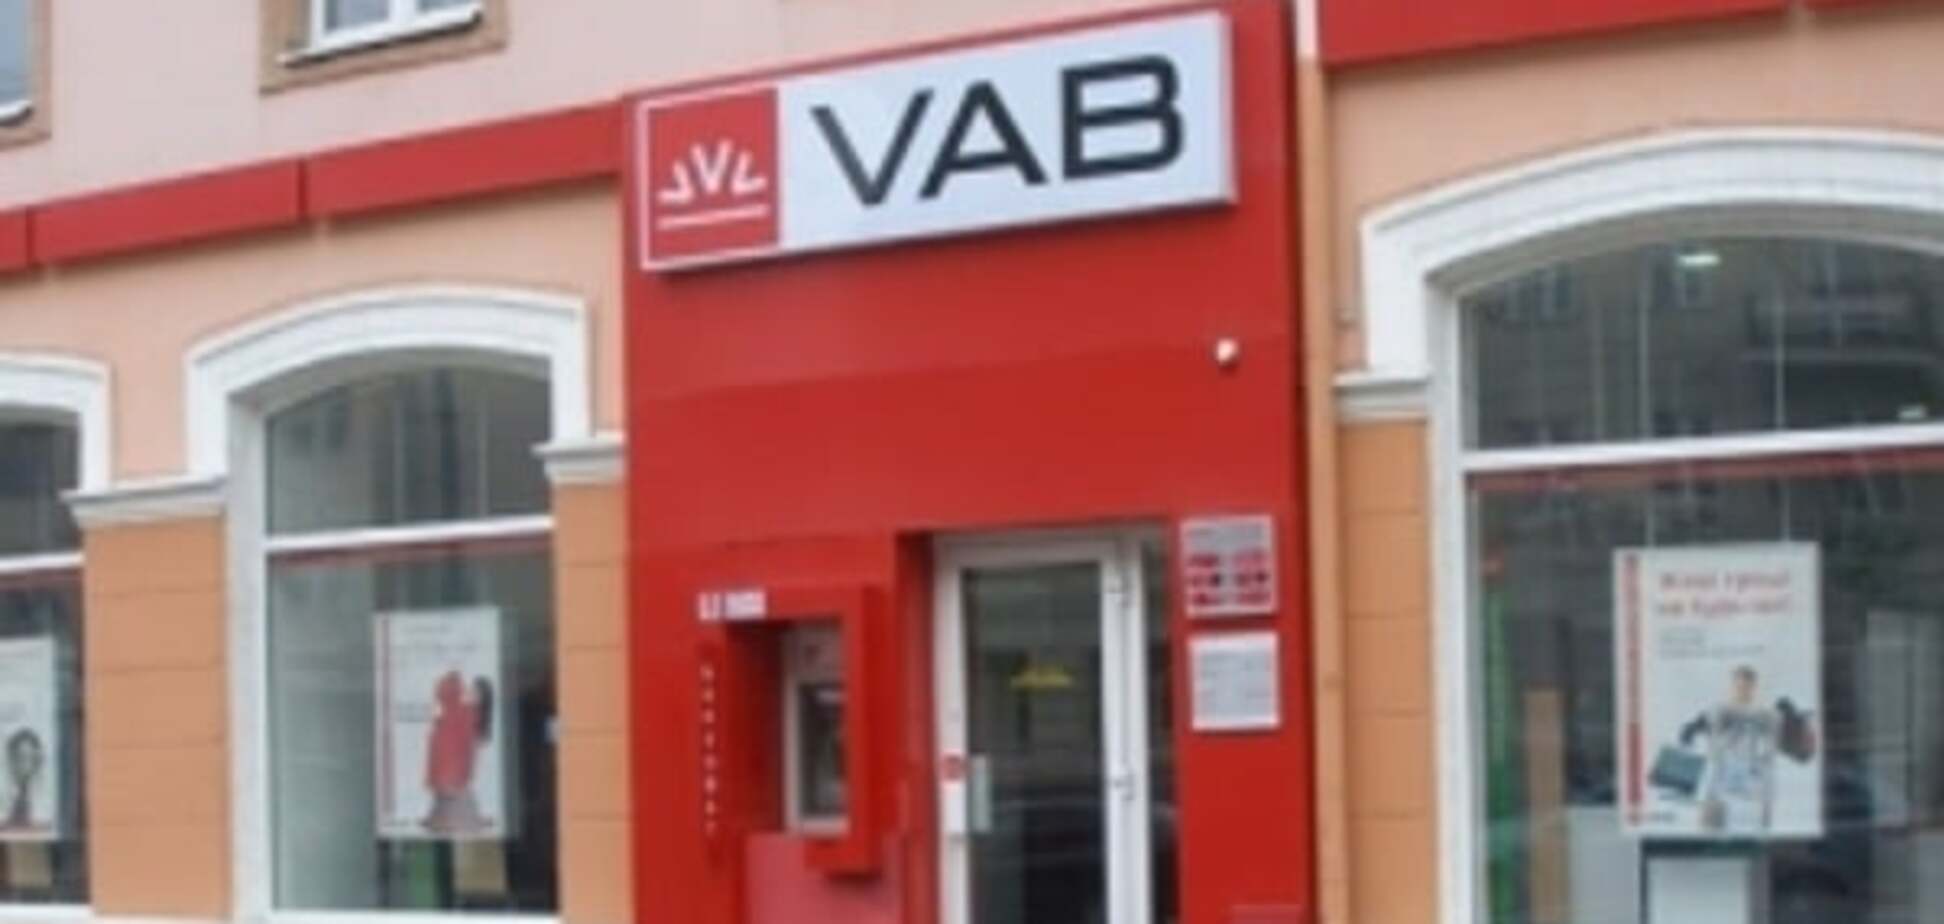 НБУ создал условия, при которых банк VAB было не спасти - Петрашко